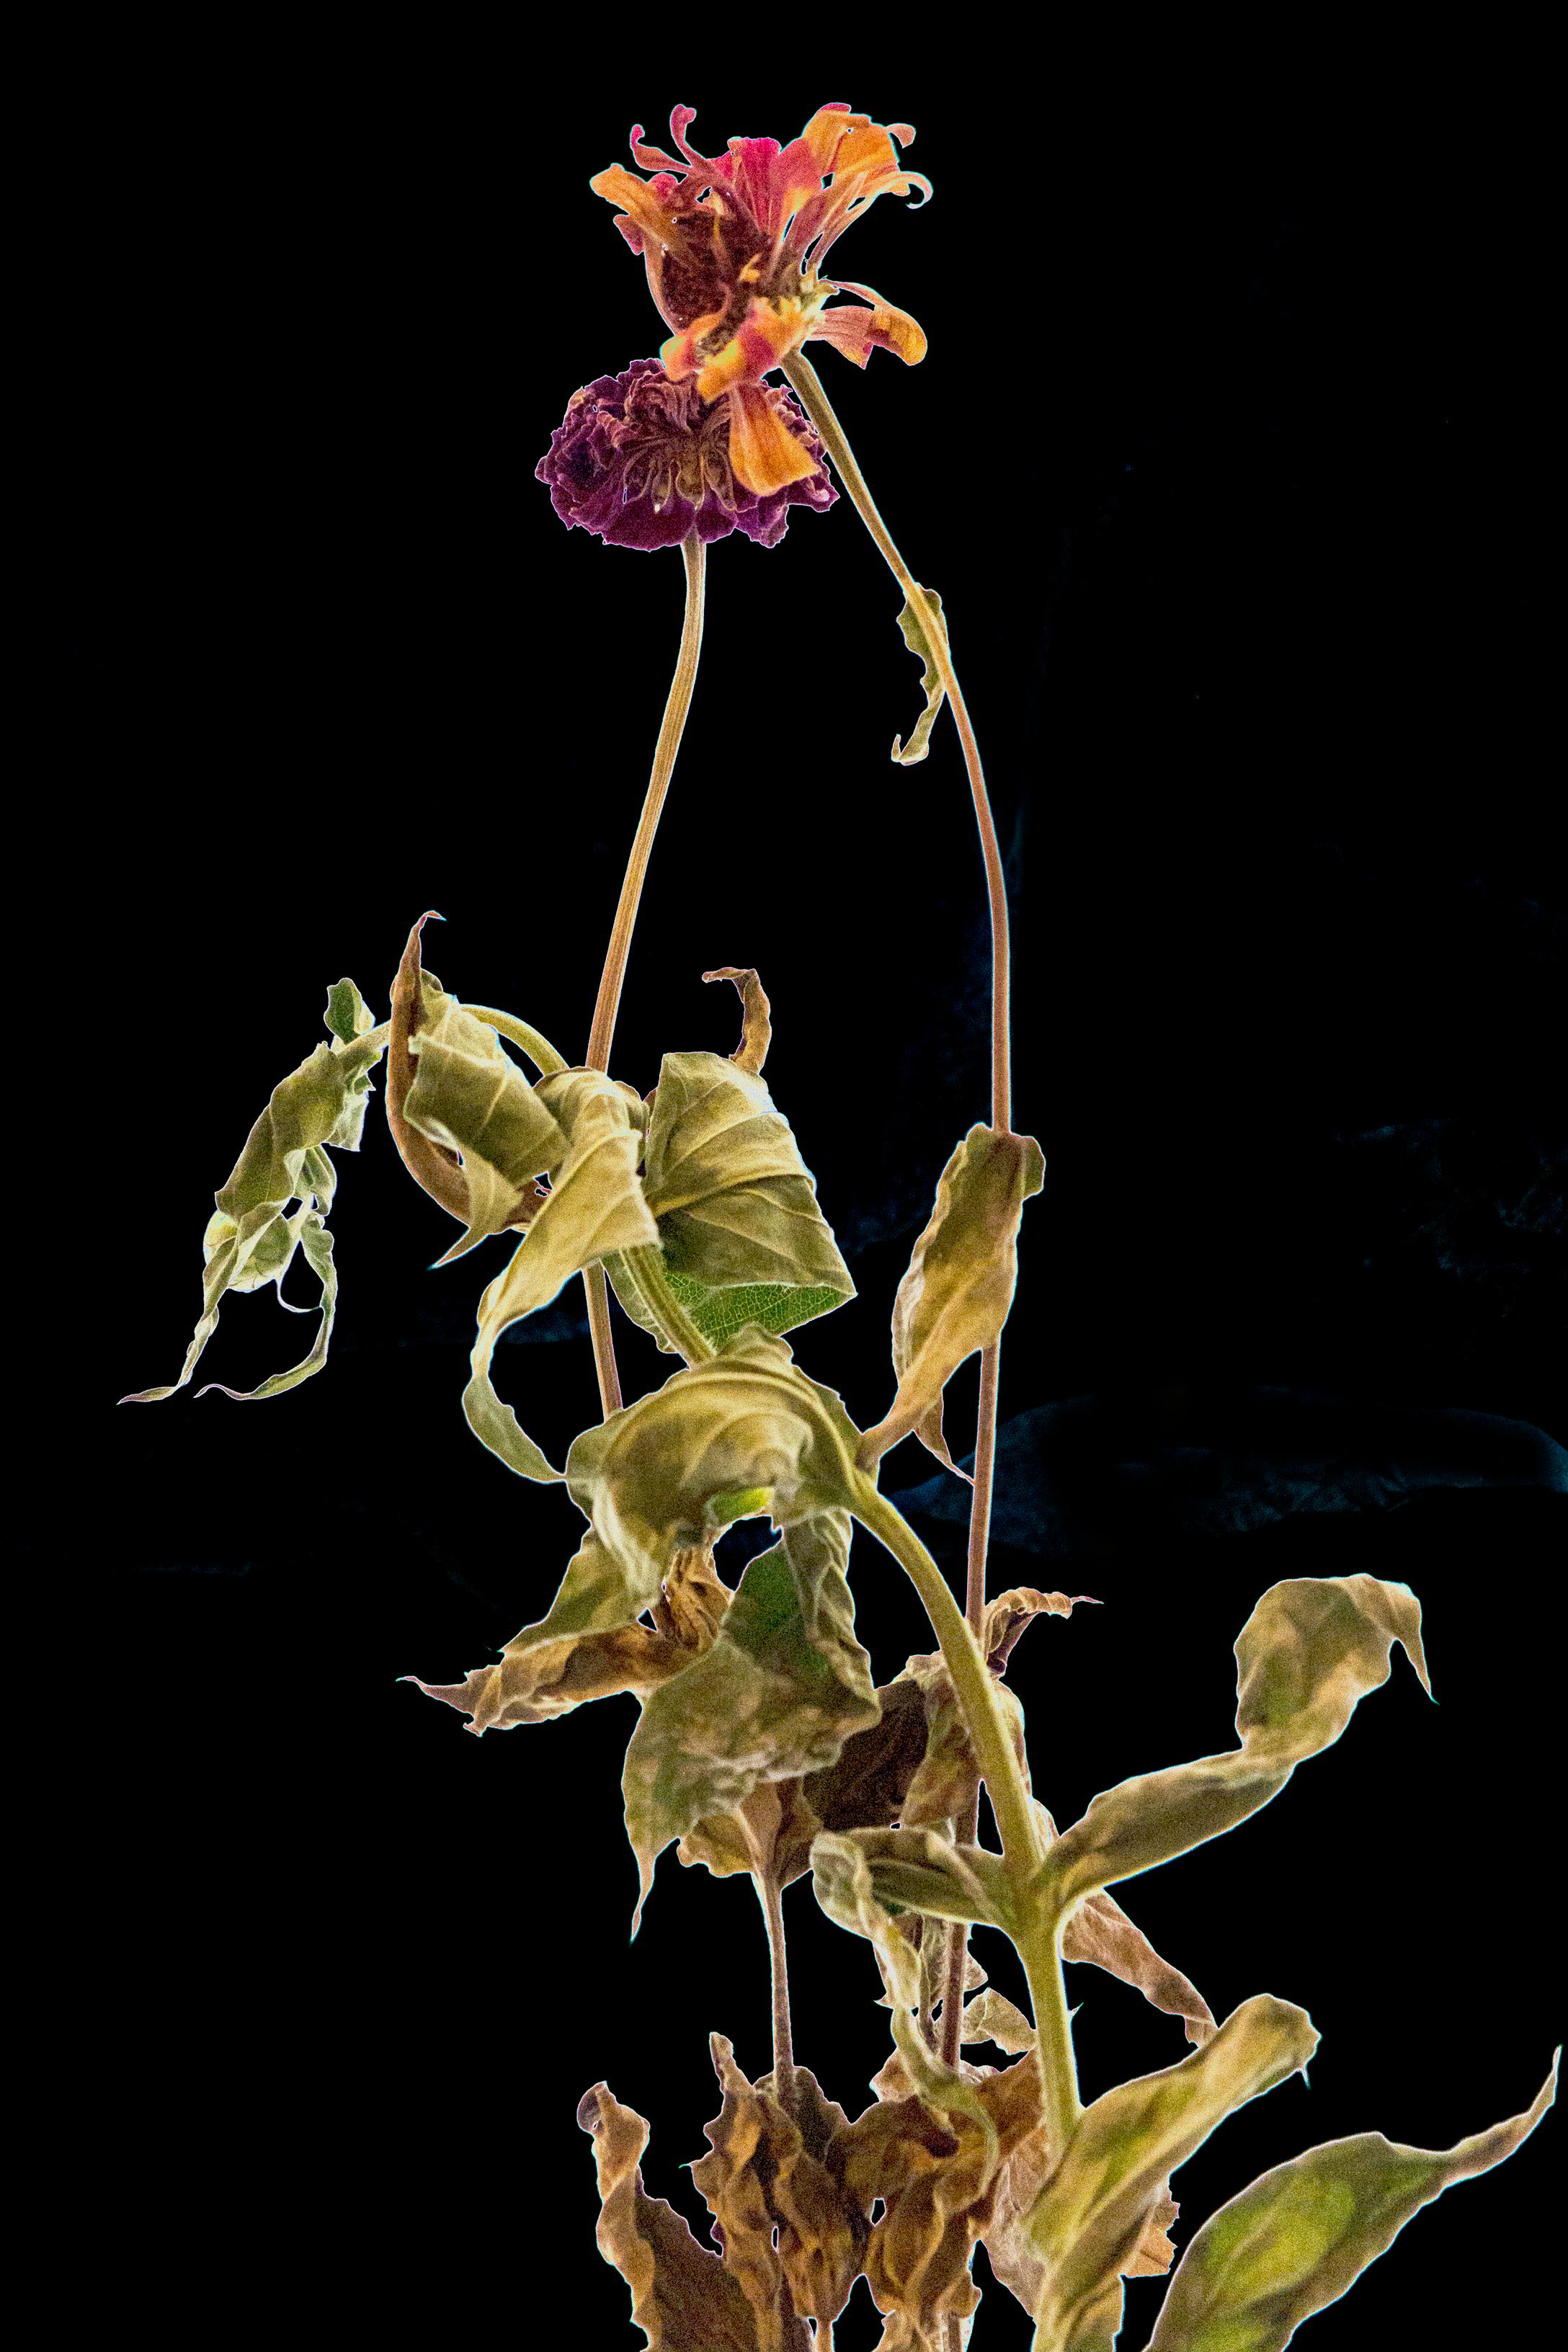 Étude florale 13 : photographie de nature morte couleur avec fleurs séchées sur champ noir, lg